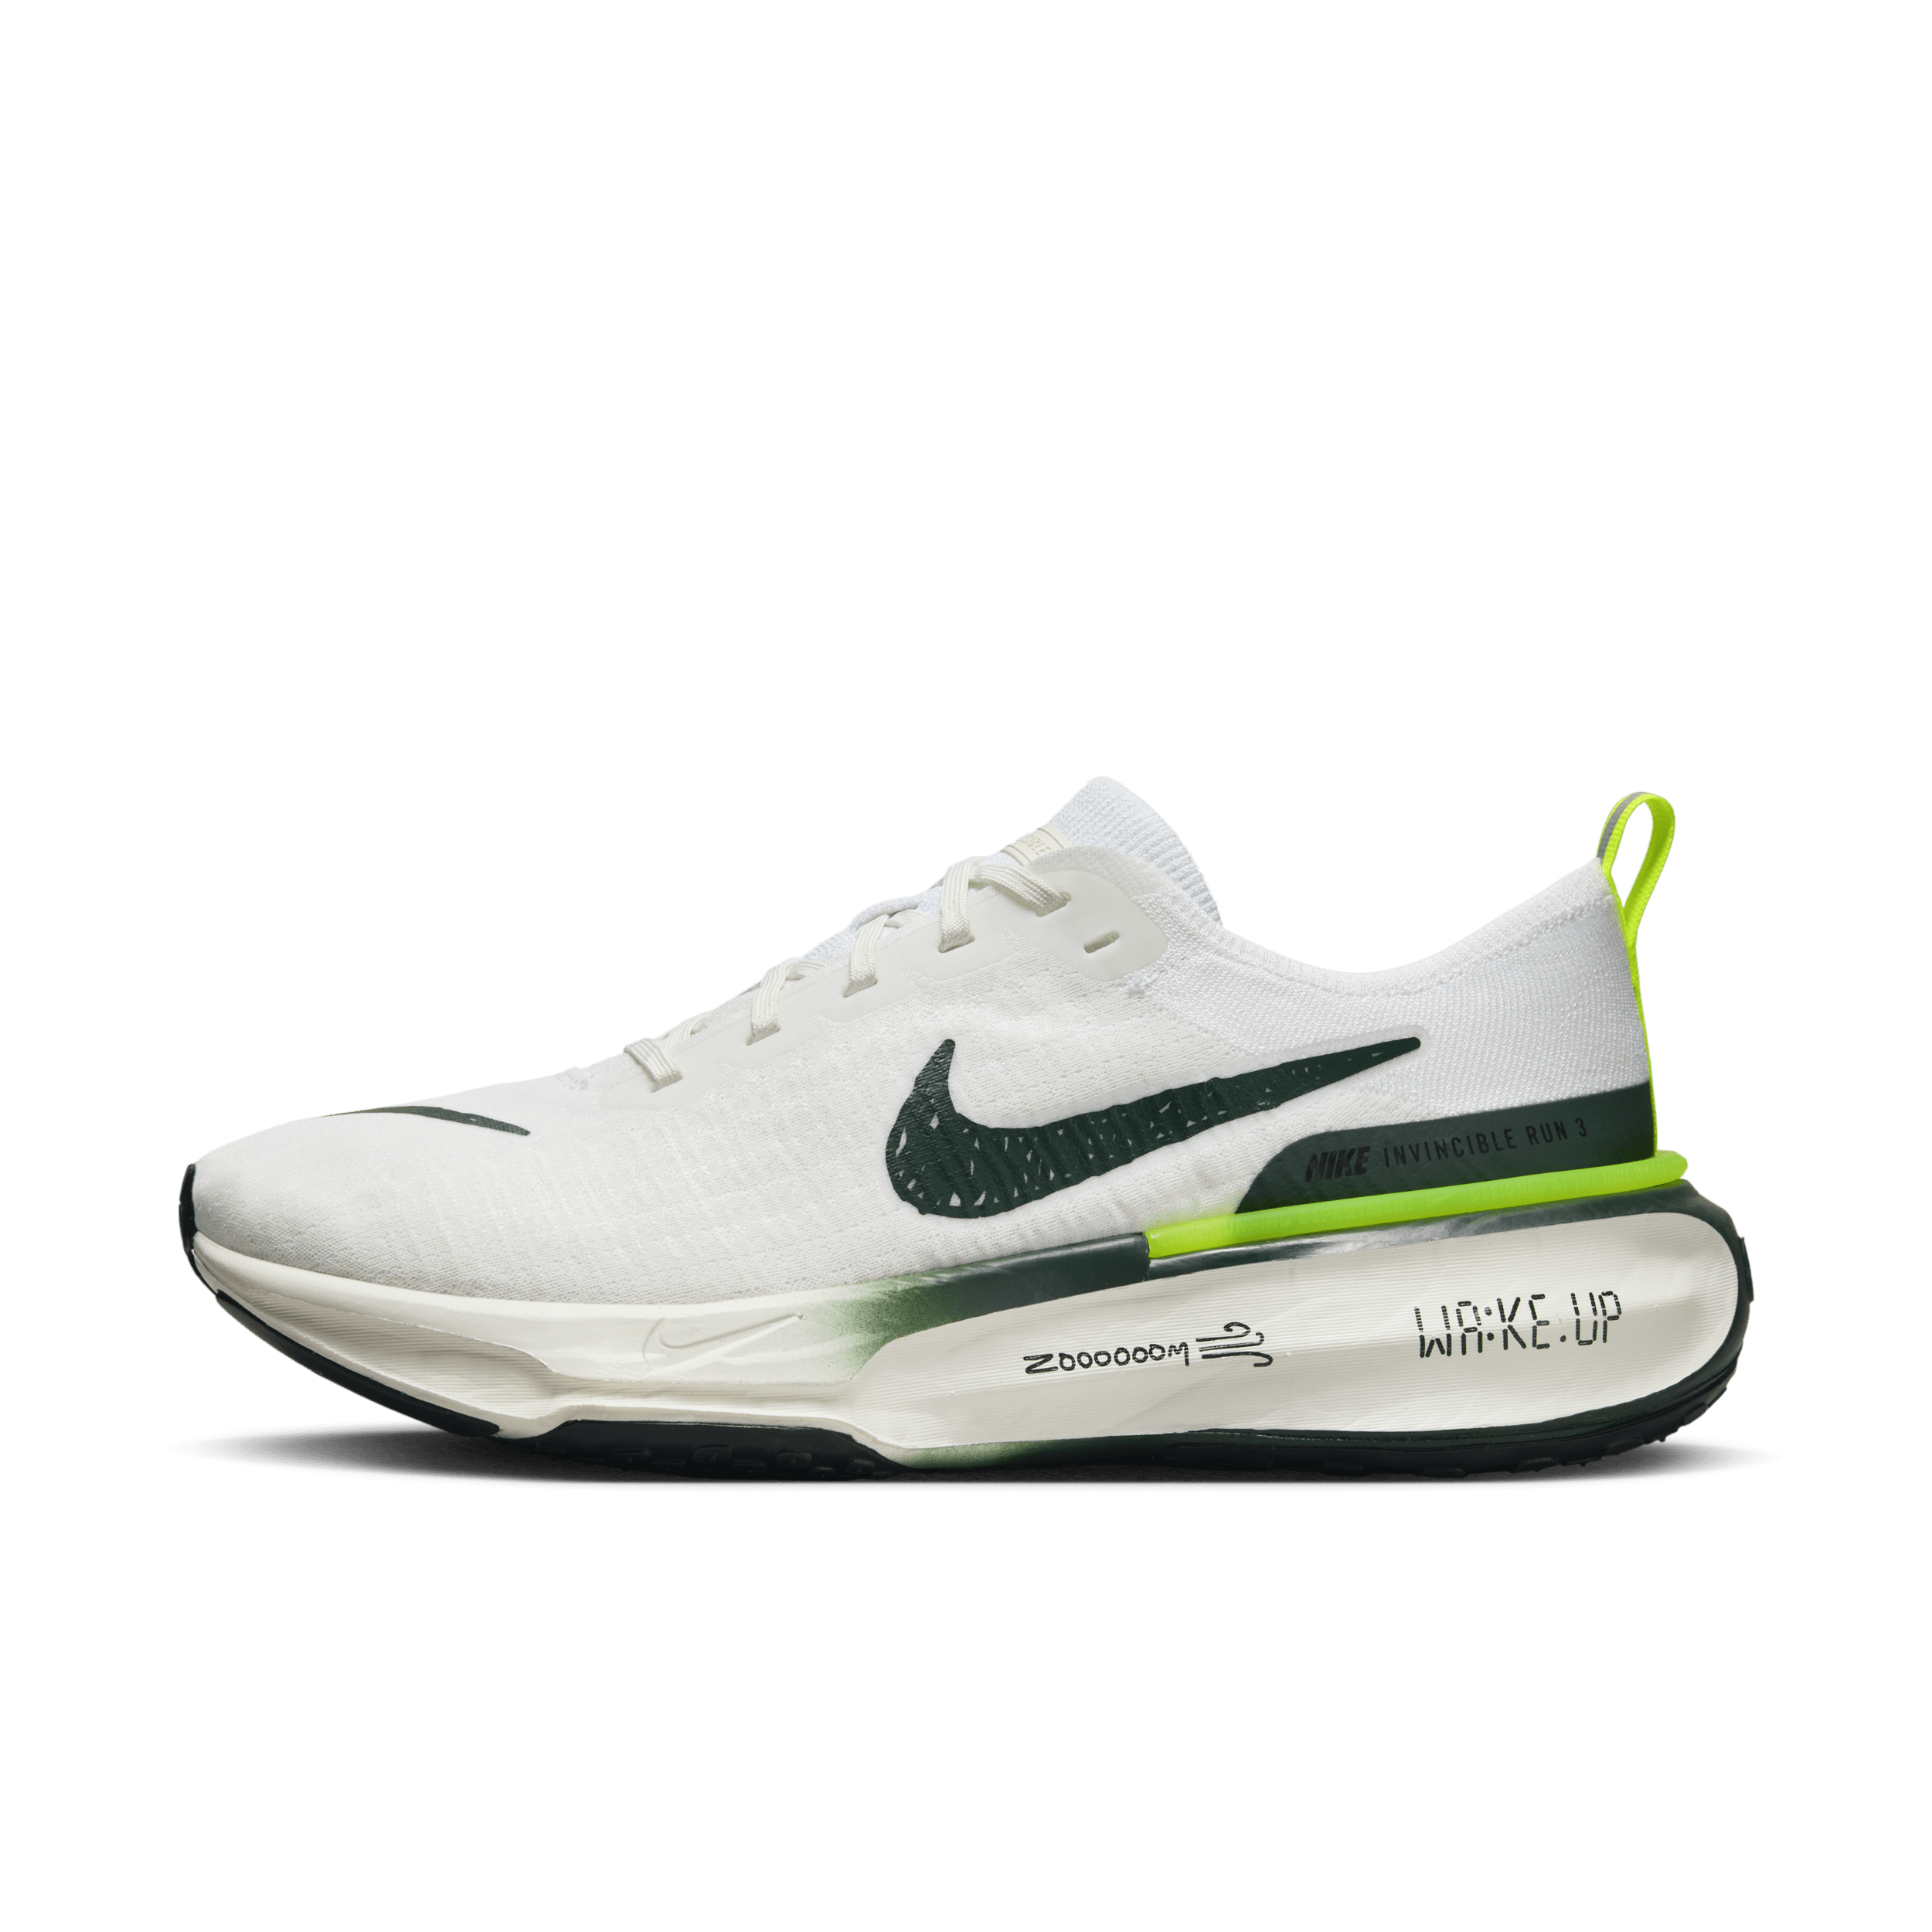 Nike Invincible 3 Zapatillas de running para asfalto - Hombre - Blanco